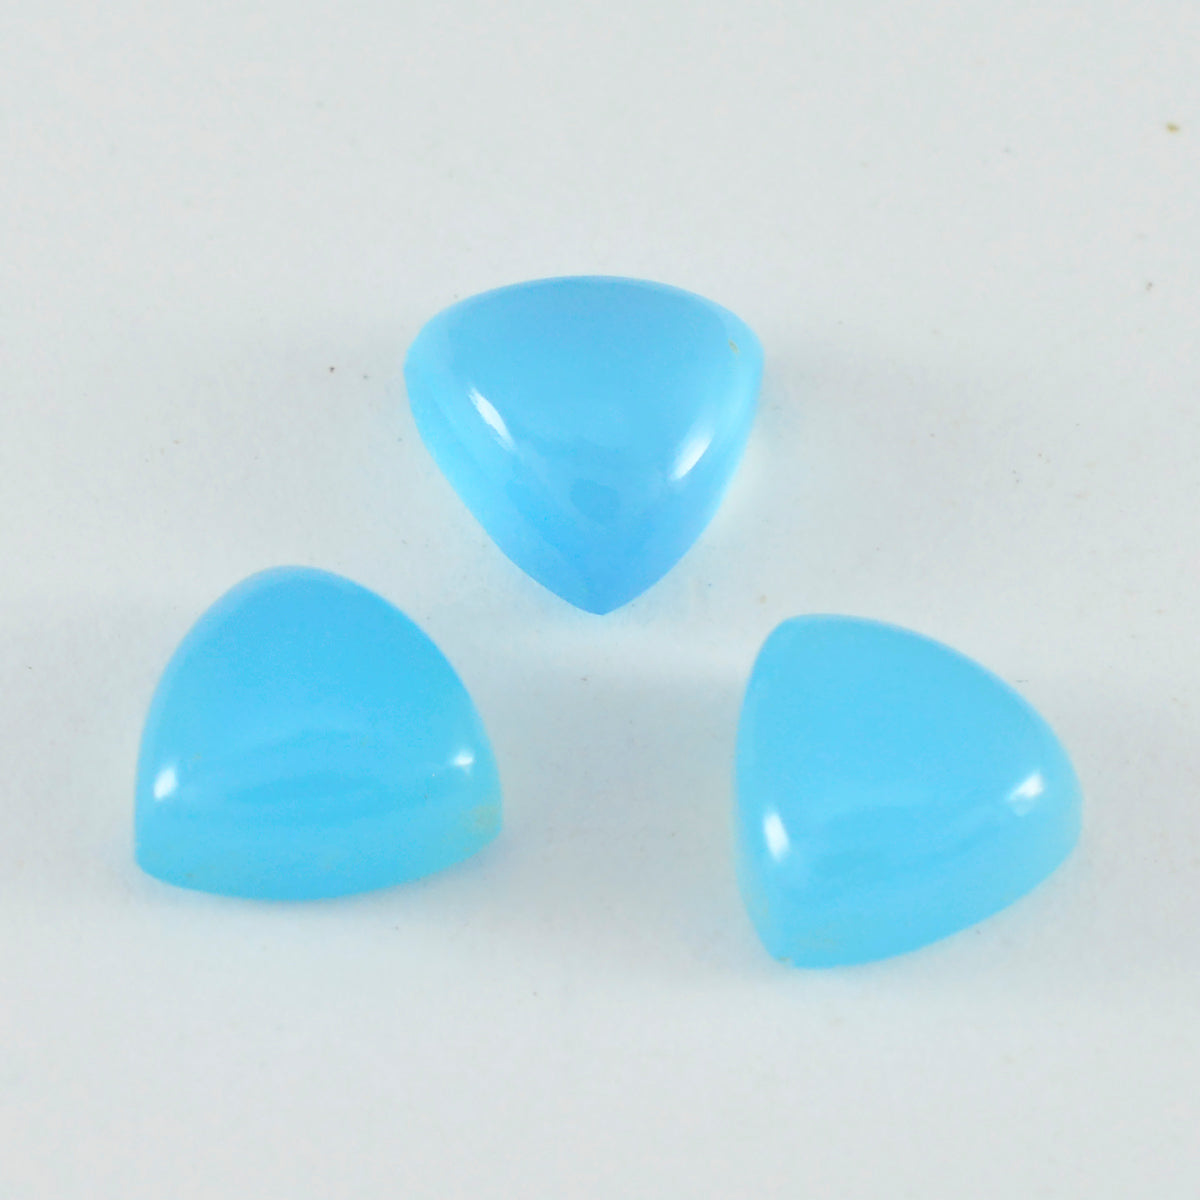 Riyogems 1 cabujón de calcedonia azul de 0.354 x 0.354 in con forma de billón, piedra preciosa suelta de calidad